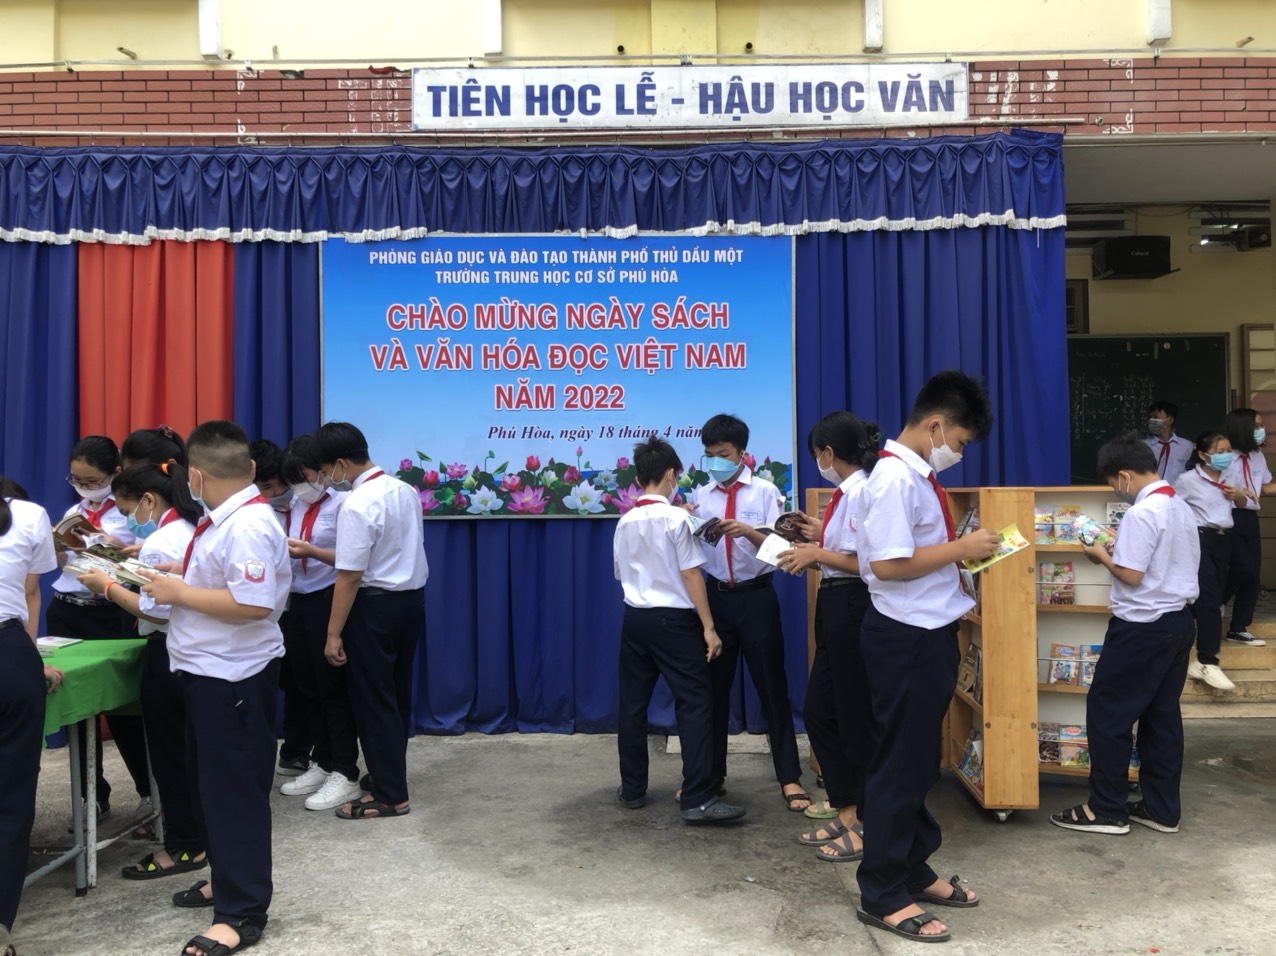 Ngày sách và văn hóa đọc Việt Nam năm 2022